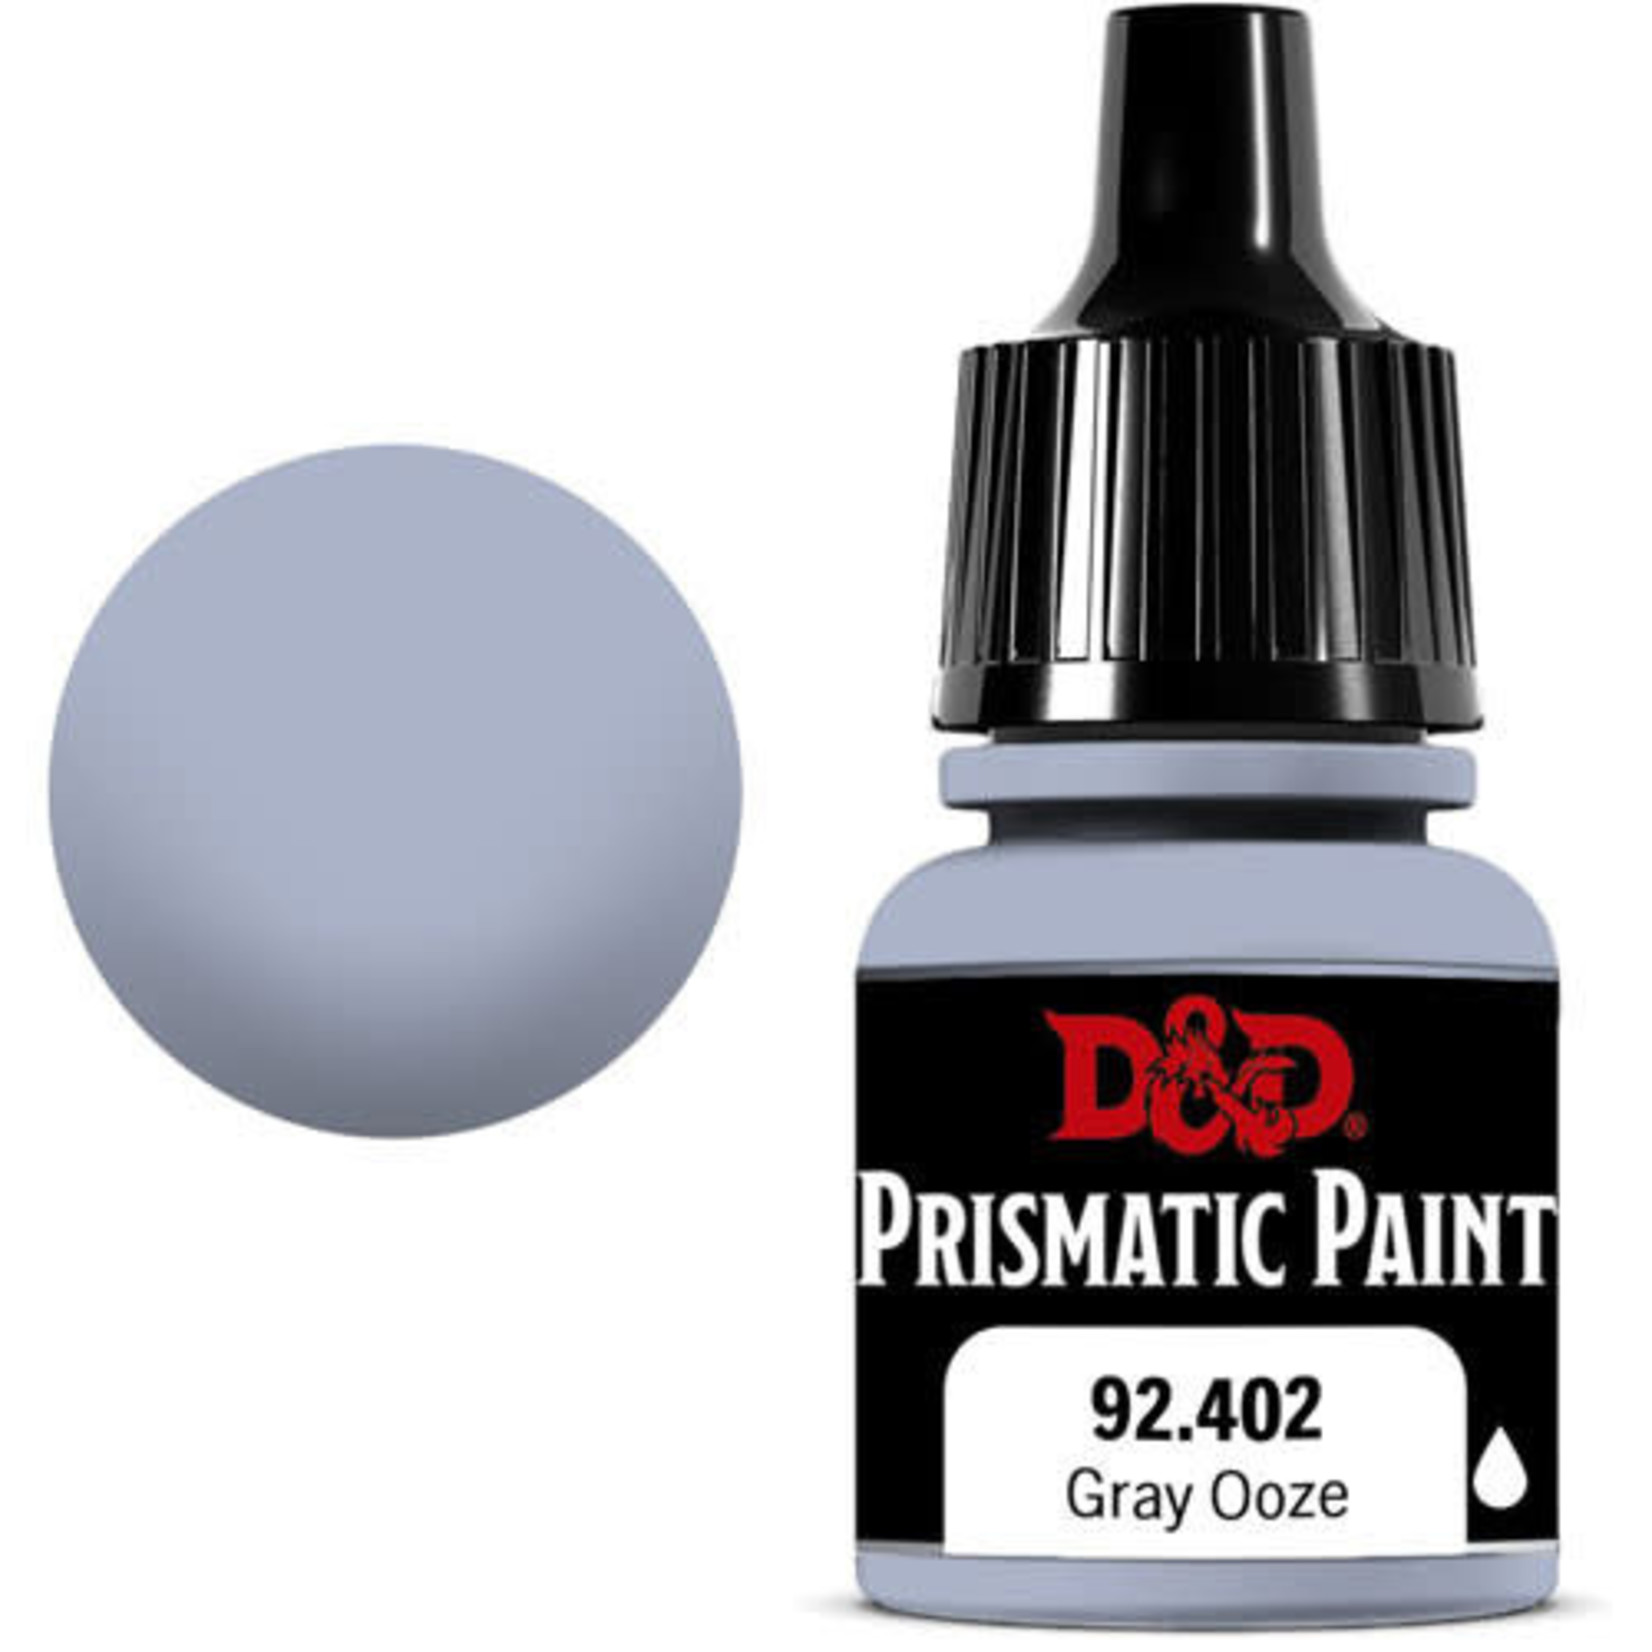 DnD Prismatic Paint Miniature Paint Gray Ooze 92,402